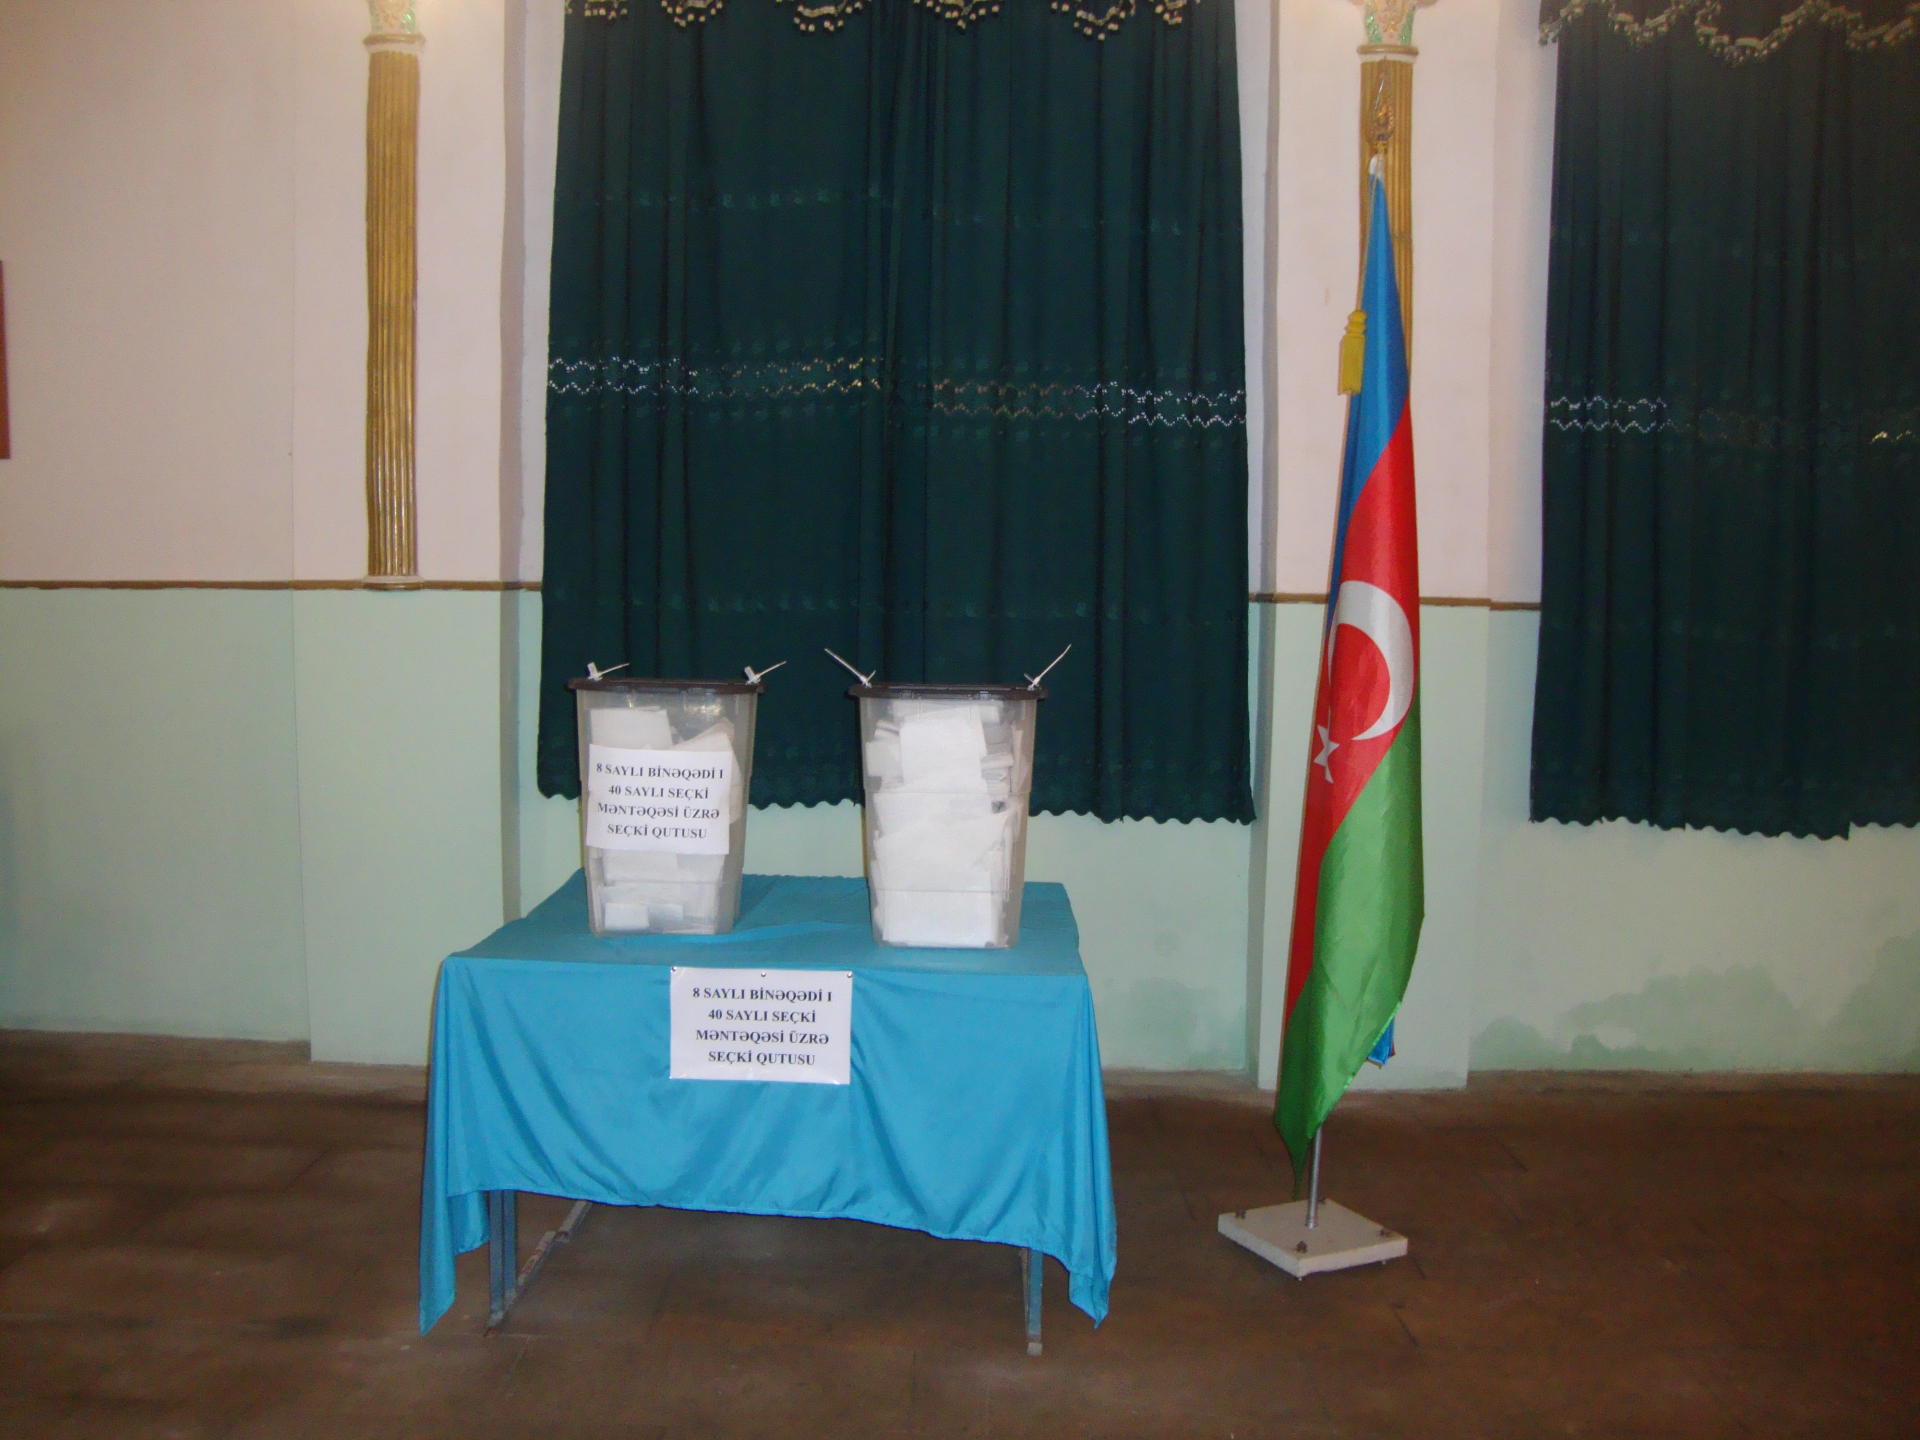 Azerbaycan’da referandum sona erdi